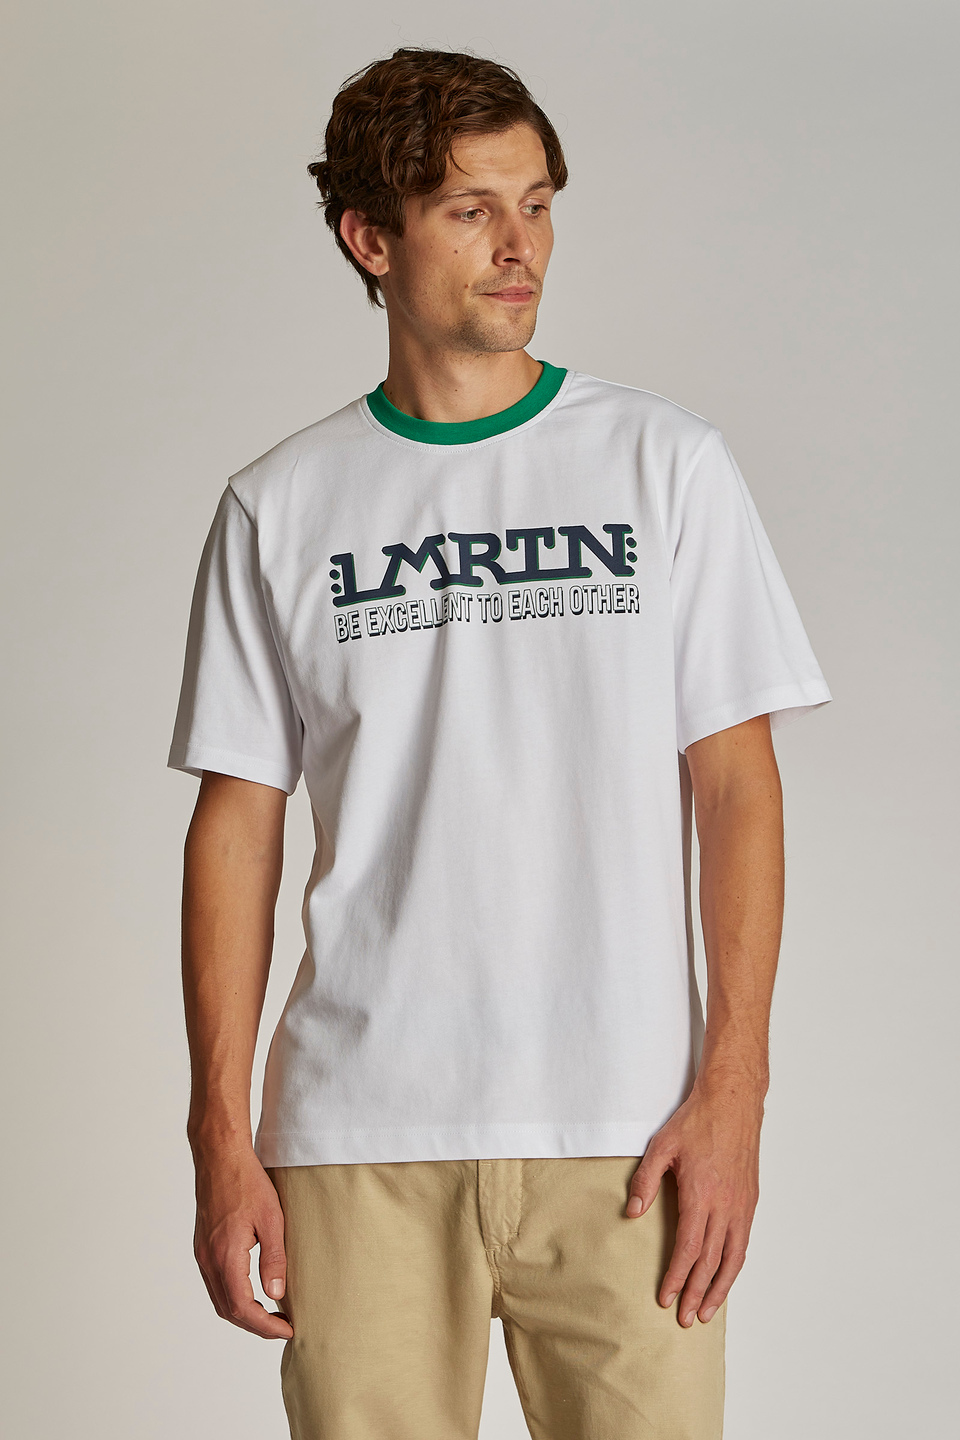 Herren-T-Shirt mit kurzem Arm und einem Kragen in Kontrastoptik, oversized Modell | La Martina - Official Online Shop